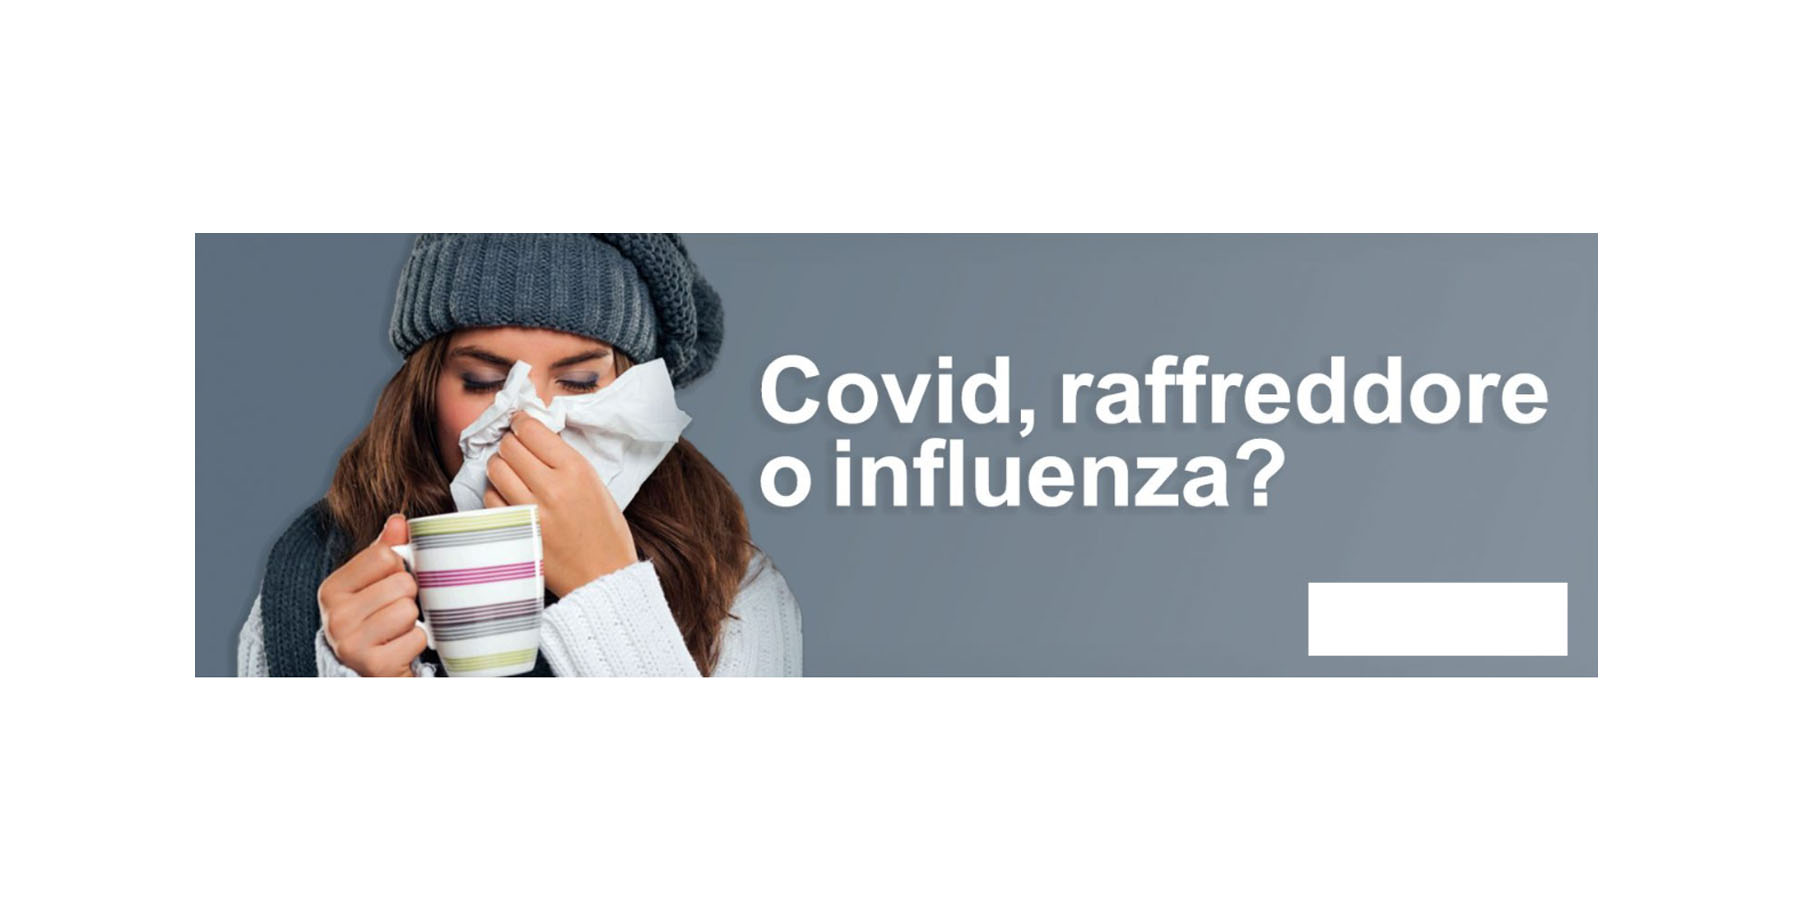 Covid, influenza, raffreddore: come distinguerli e come proteggersi. Guida completa.